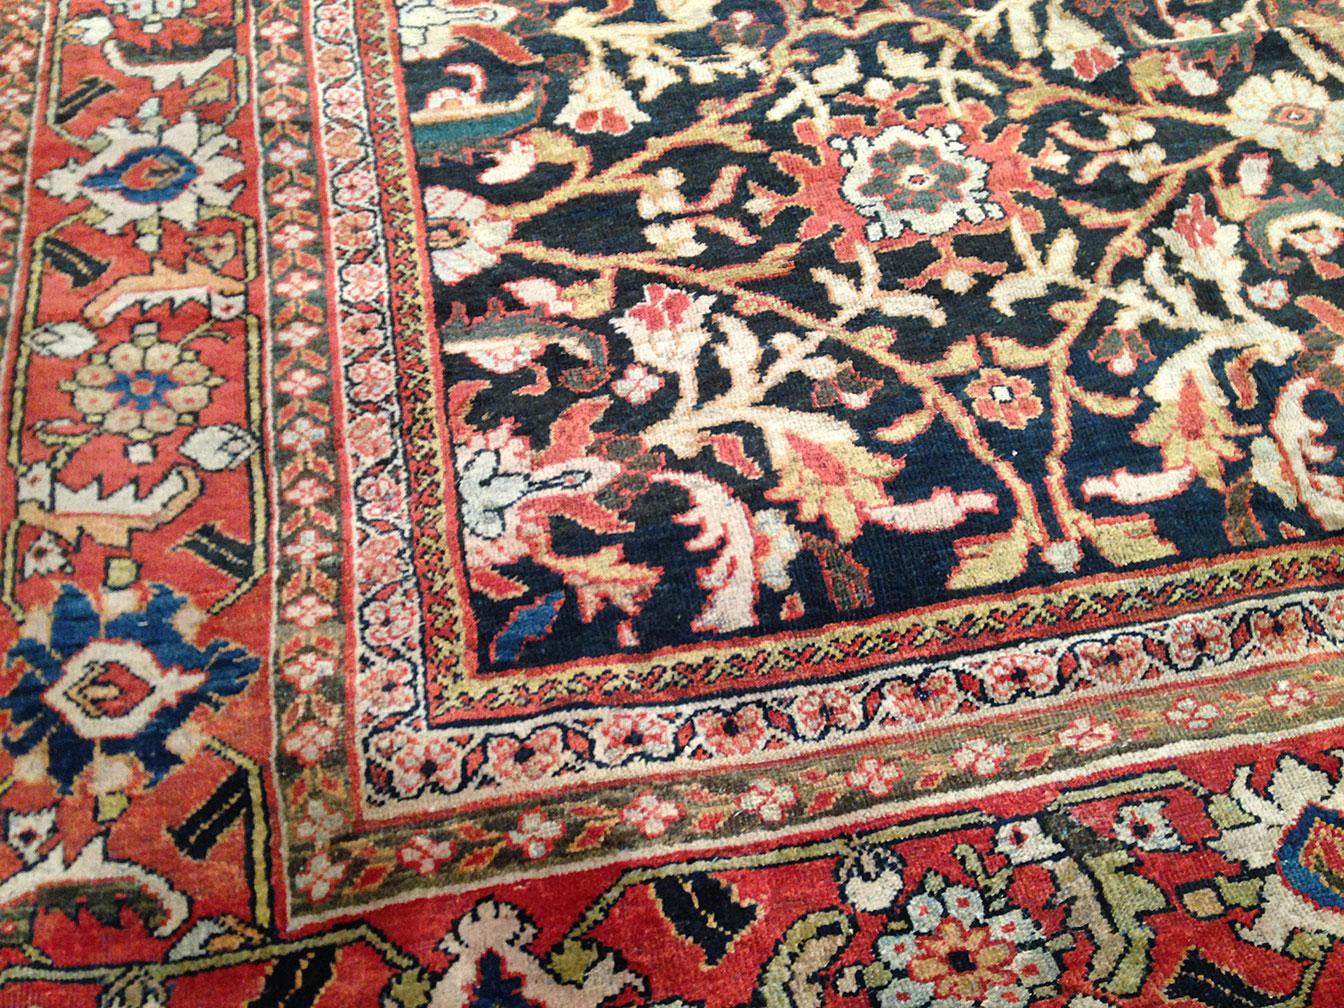 Antique sultan abad Carpet - # 50700